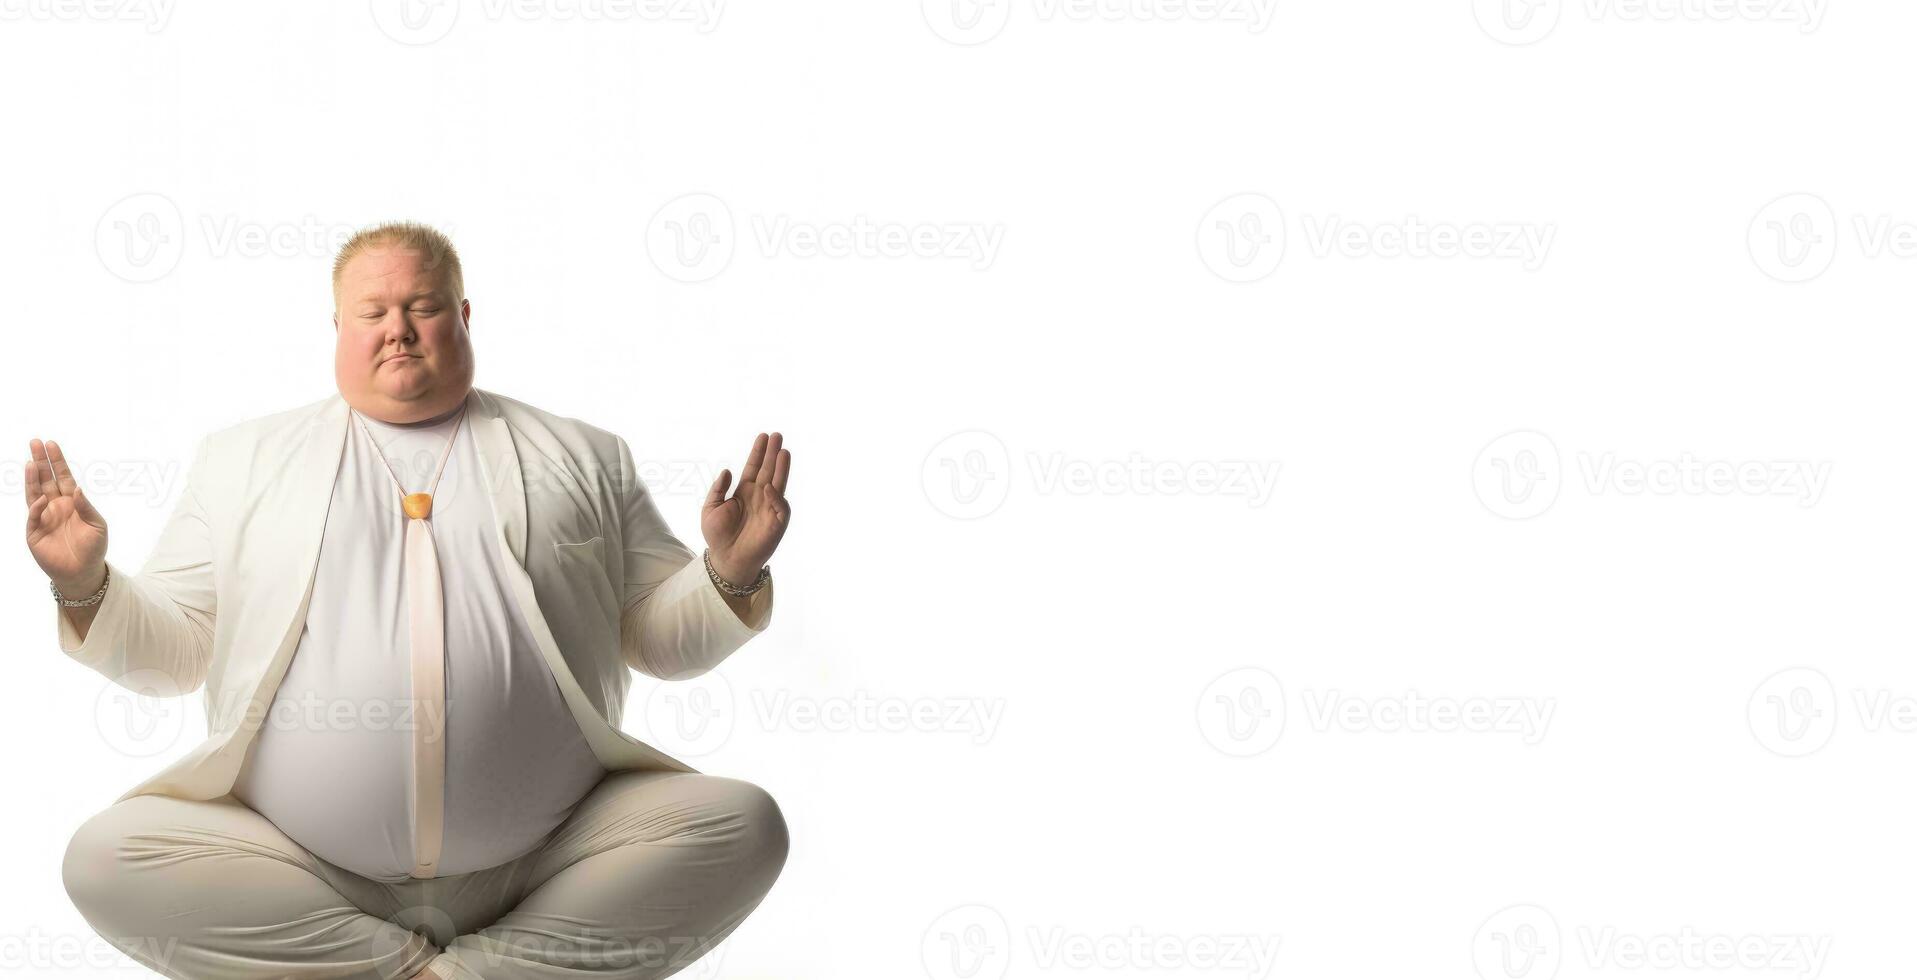 paisible en surpoids directeur pratiquant yoga pose isolé sur une blanc Contexte photo